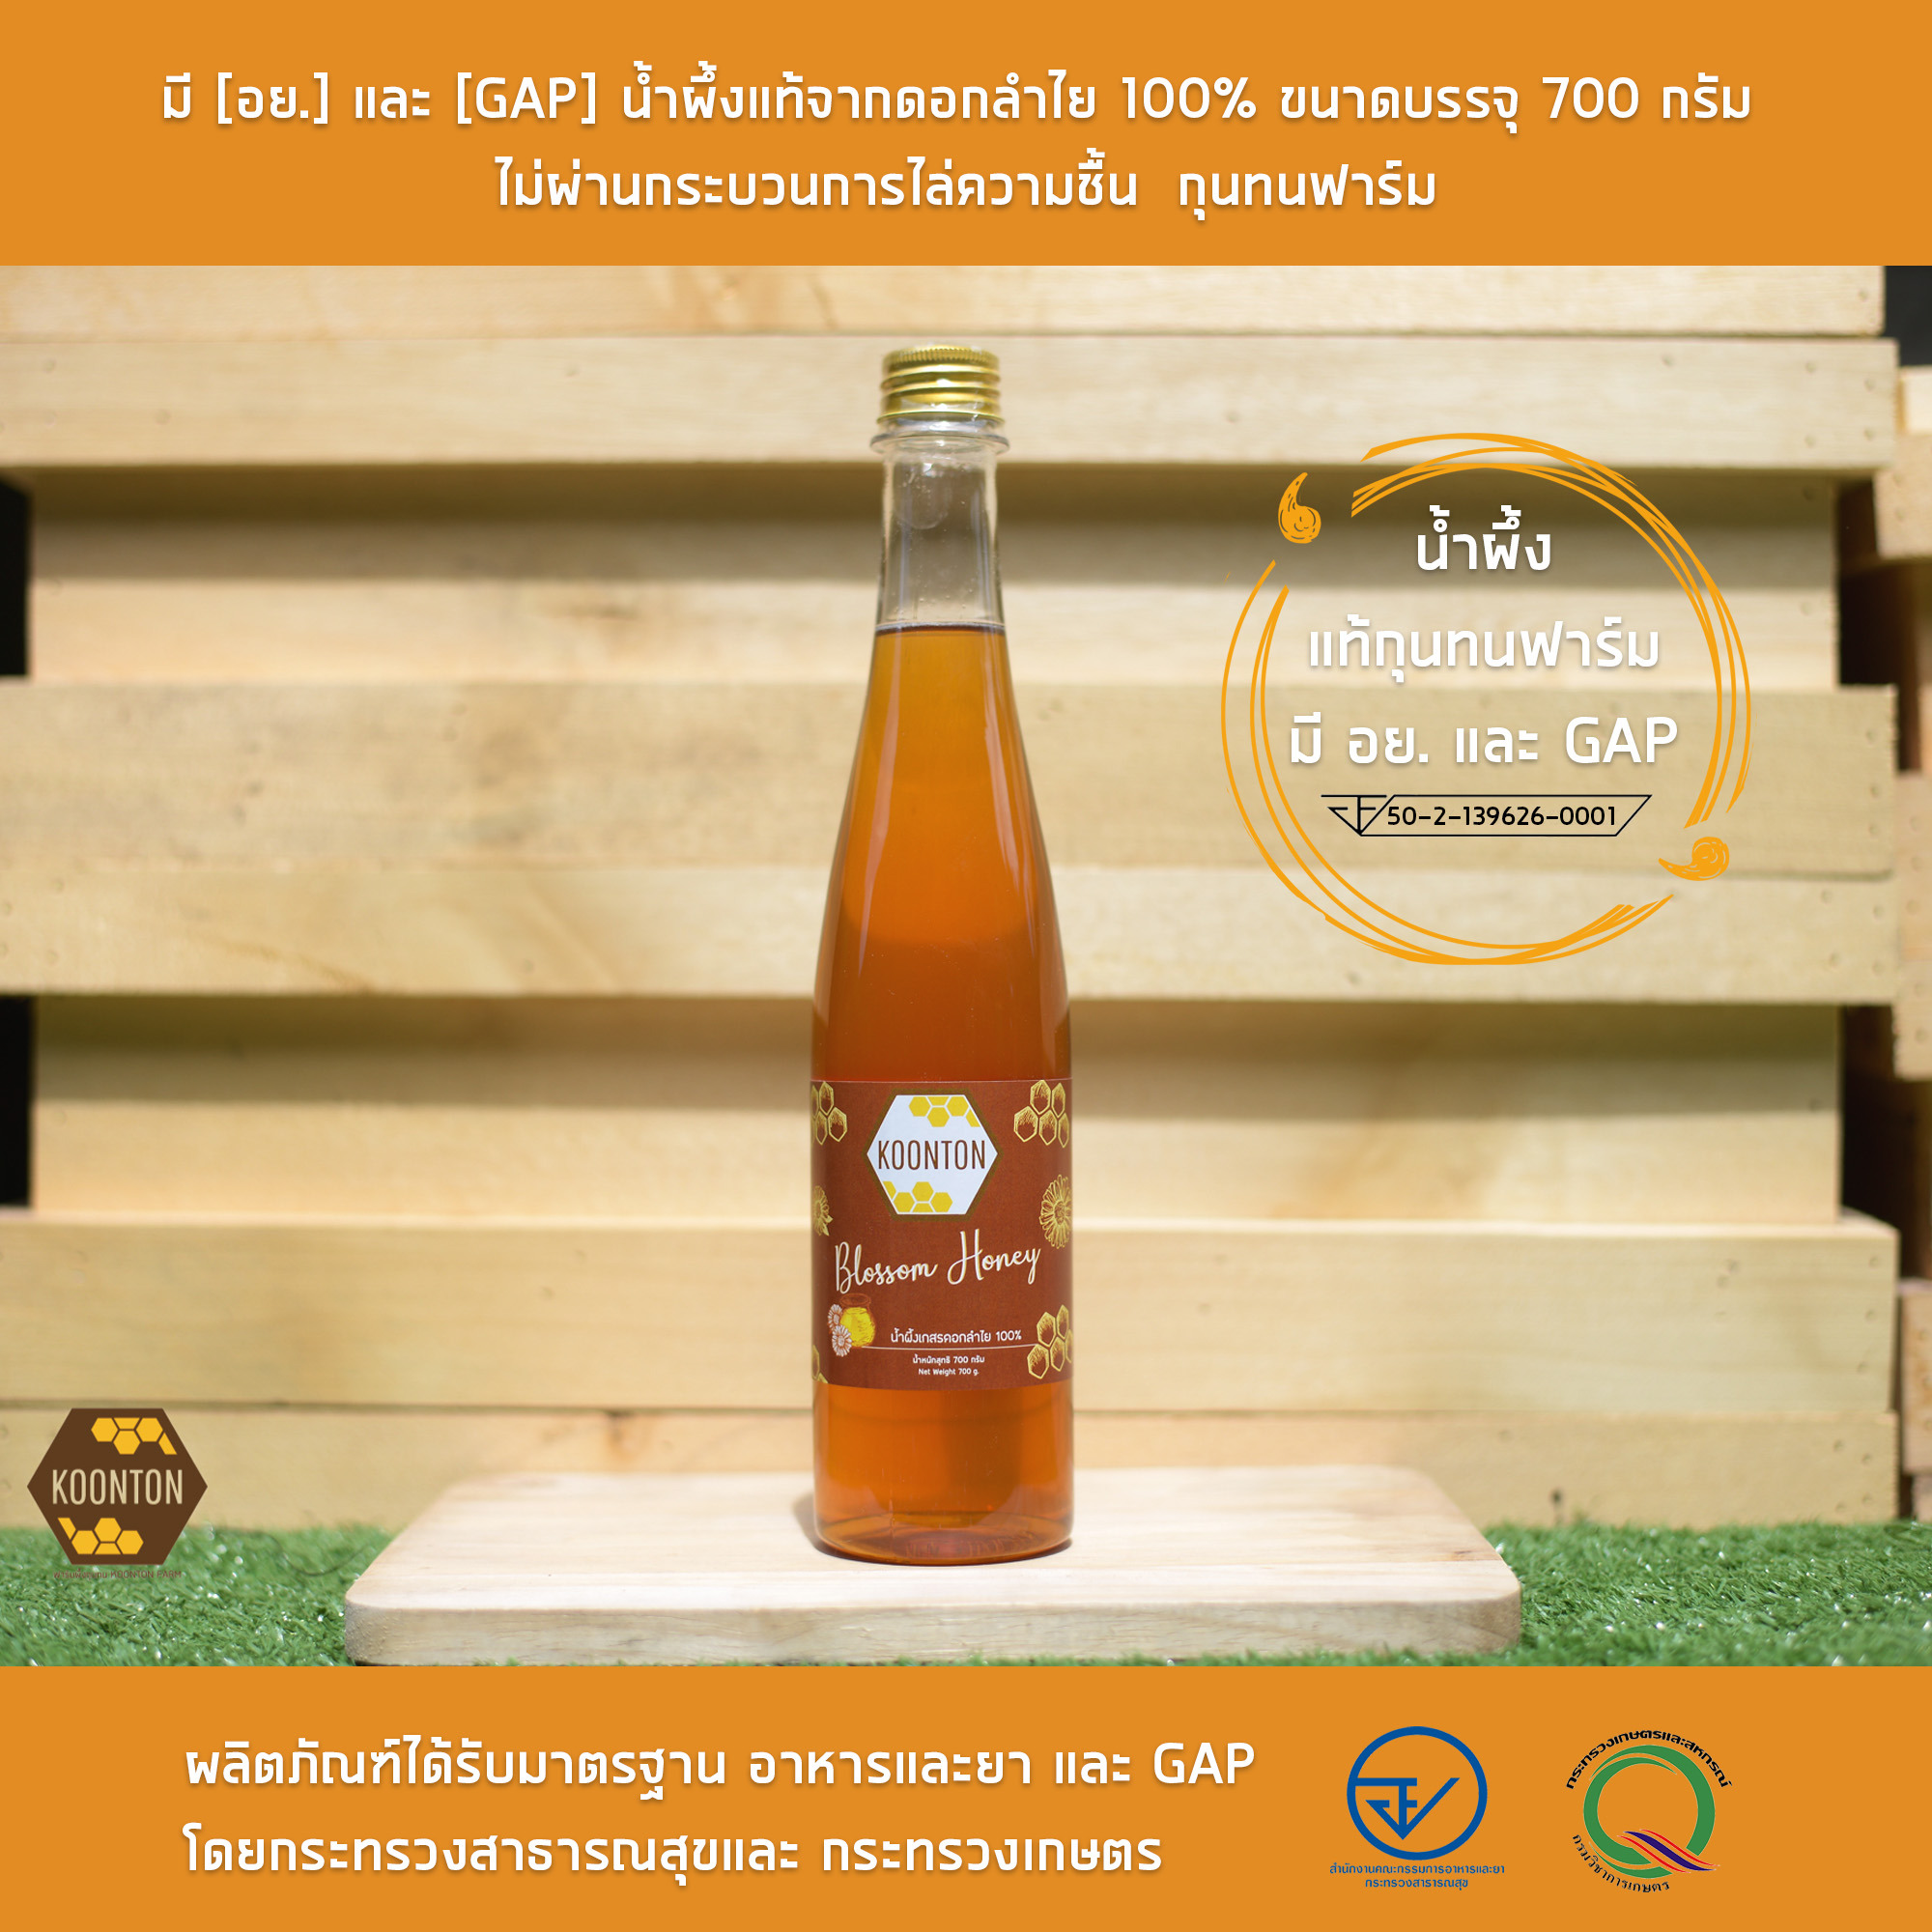 มี [อย.] และ [GAP] น้ำผึ้งแท้จากดอกลำไย 100% ขนาดบรรจุ 700 กรัม ไม่ผ่านกระบวนการไล่ความชื้น  กุนทนฟาร์ม